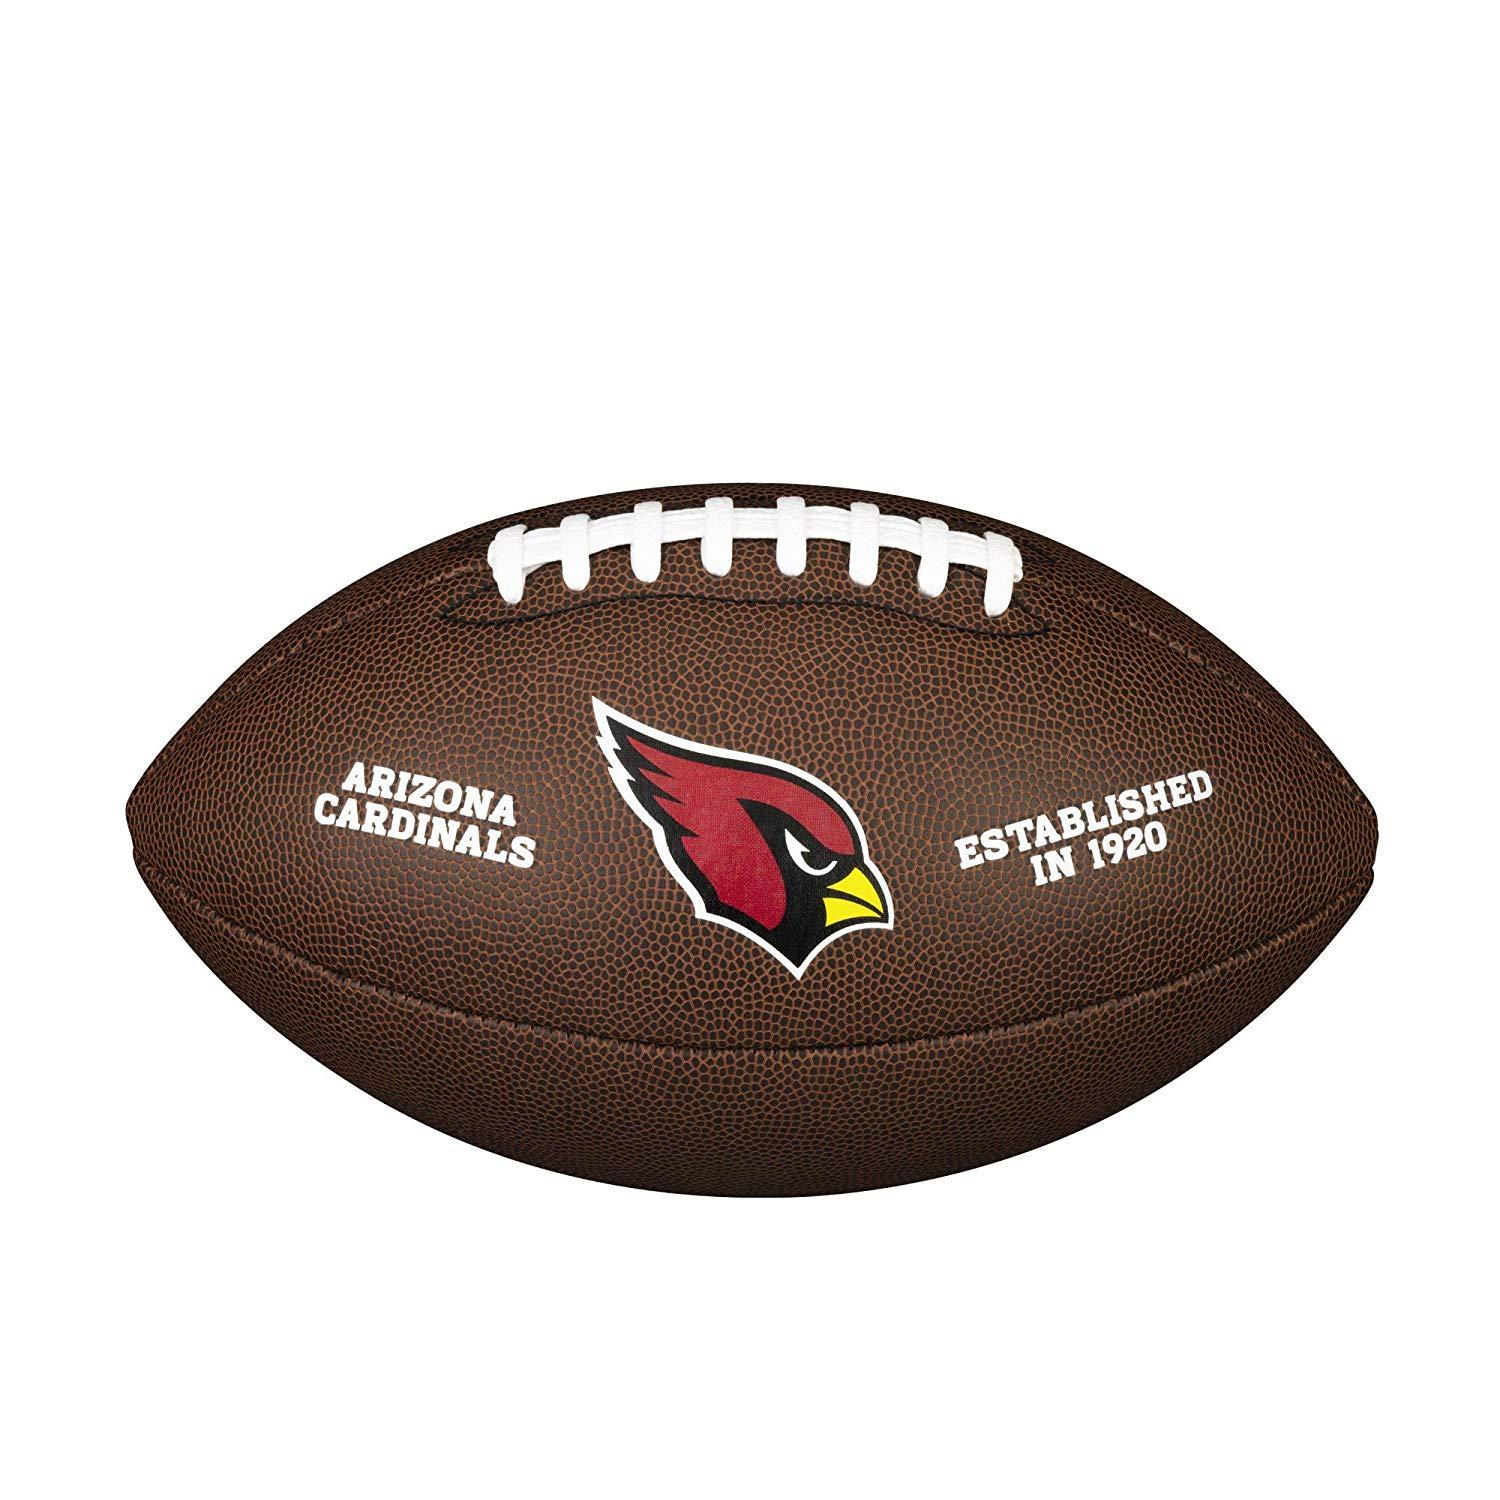 Cardinals Football Logo - Amazon.com : NFL Team Logo Composite Football, Official - Arizona ...